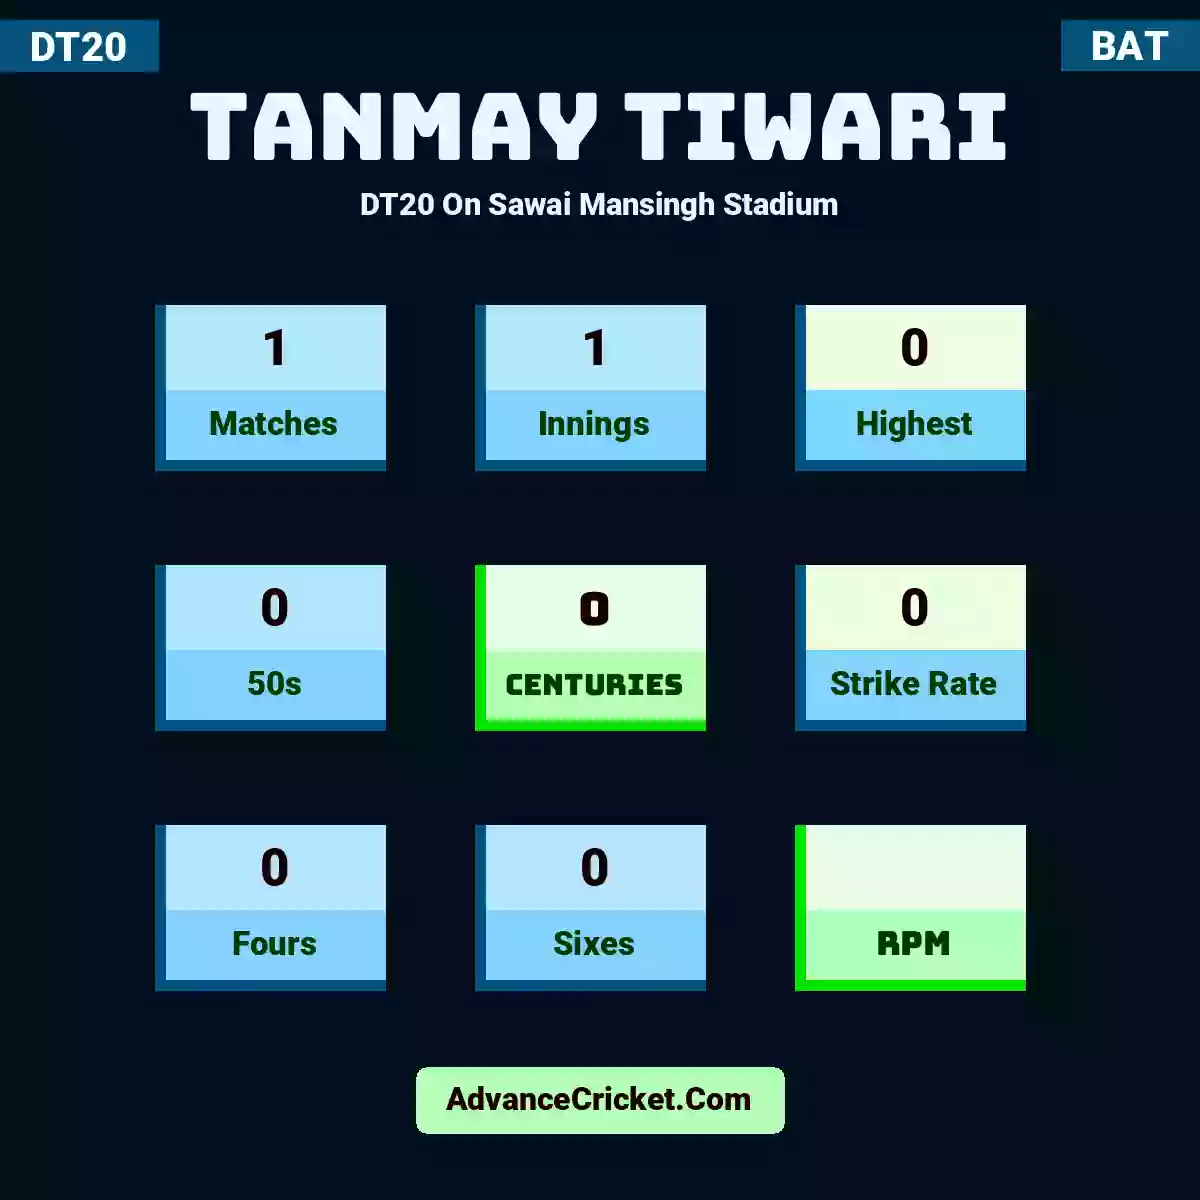 Tanmay Tiwari DT20  On Sawai Mansingh Stadium, Tanmay Tiwari played 1 matches, scored 0 runs as highest, 0 half-centuries, and 0 centuries, with a strike rate of 0. T.Tiwari hit 0 fours and 0 sixes.